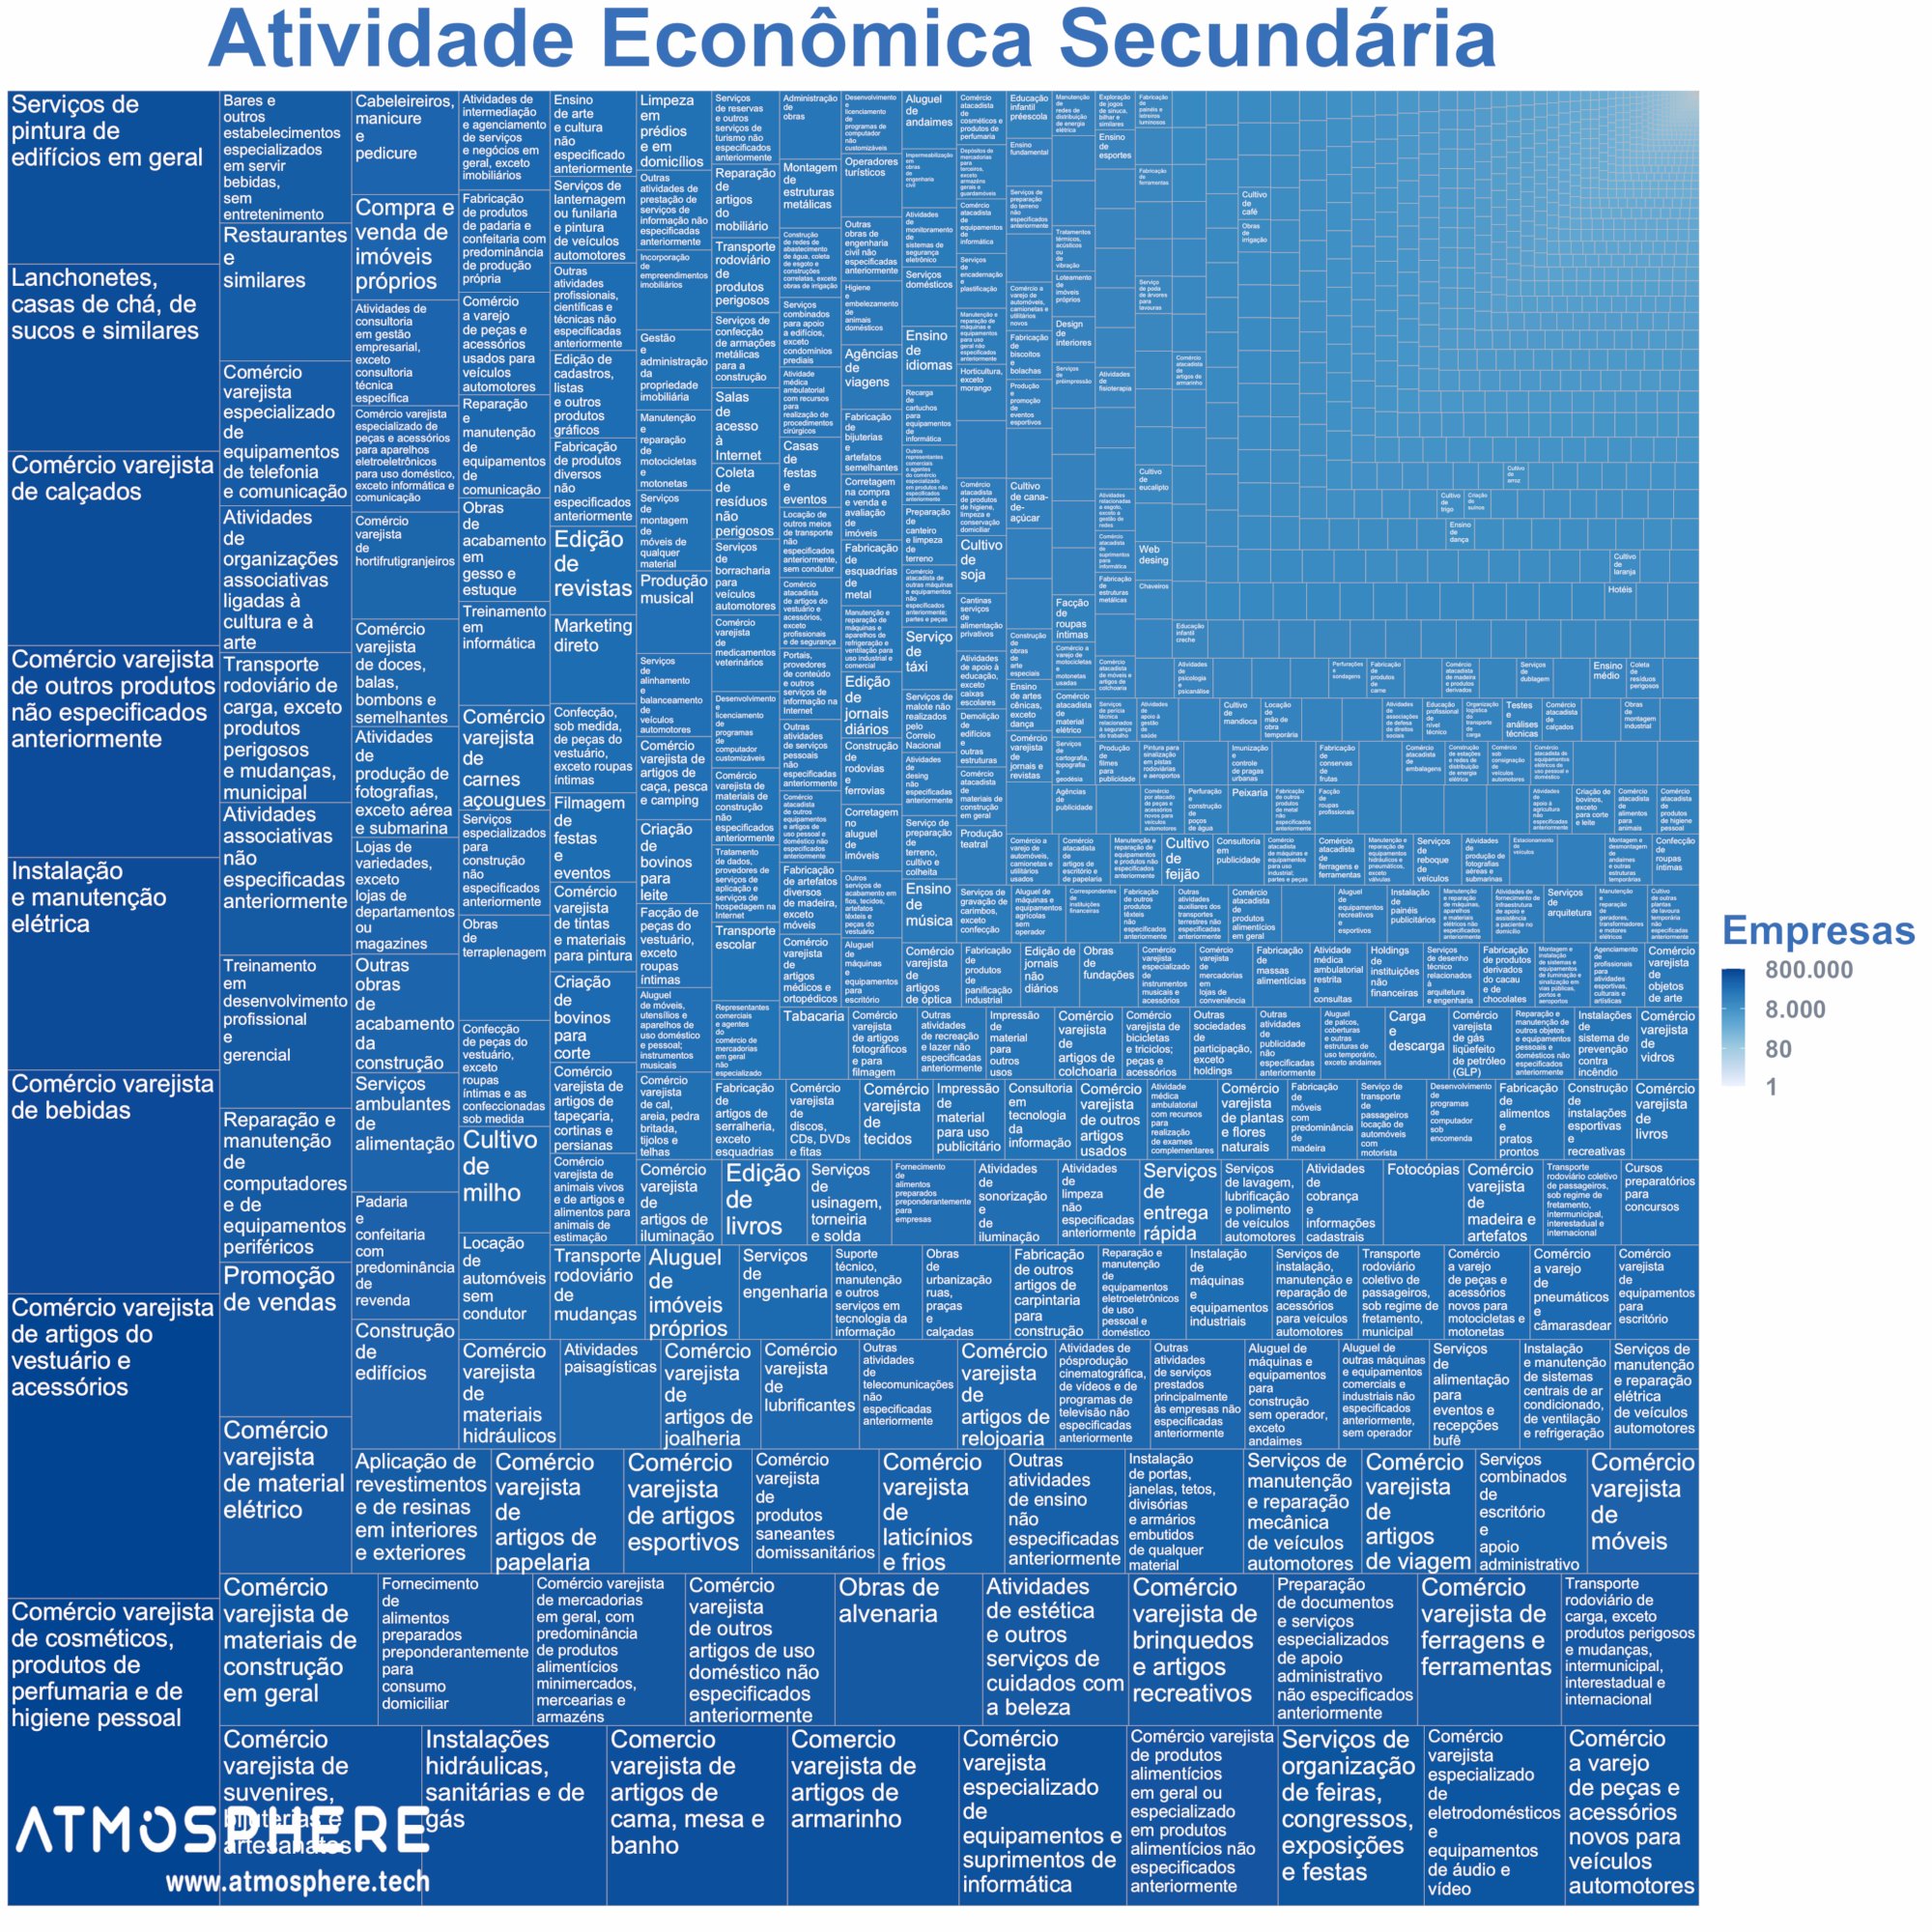 Oportunidados CNAE Atividade Econômica Secundária das Empresas no Brasil